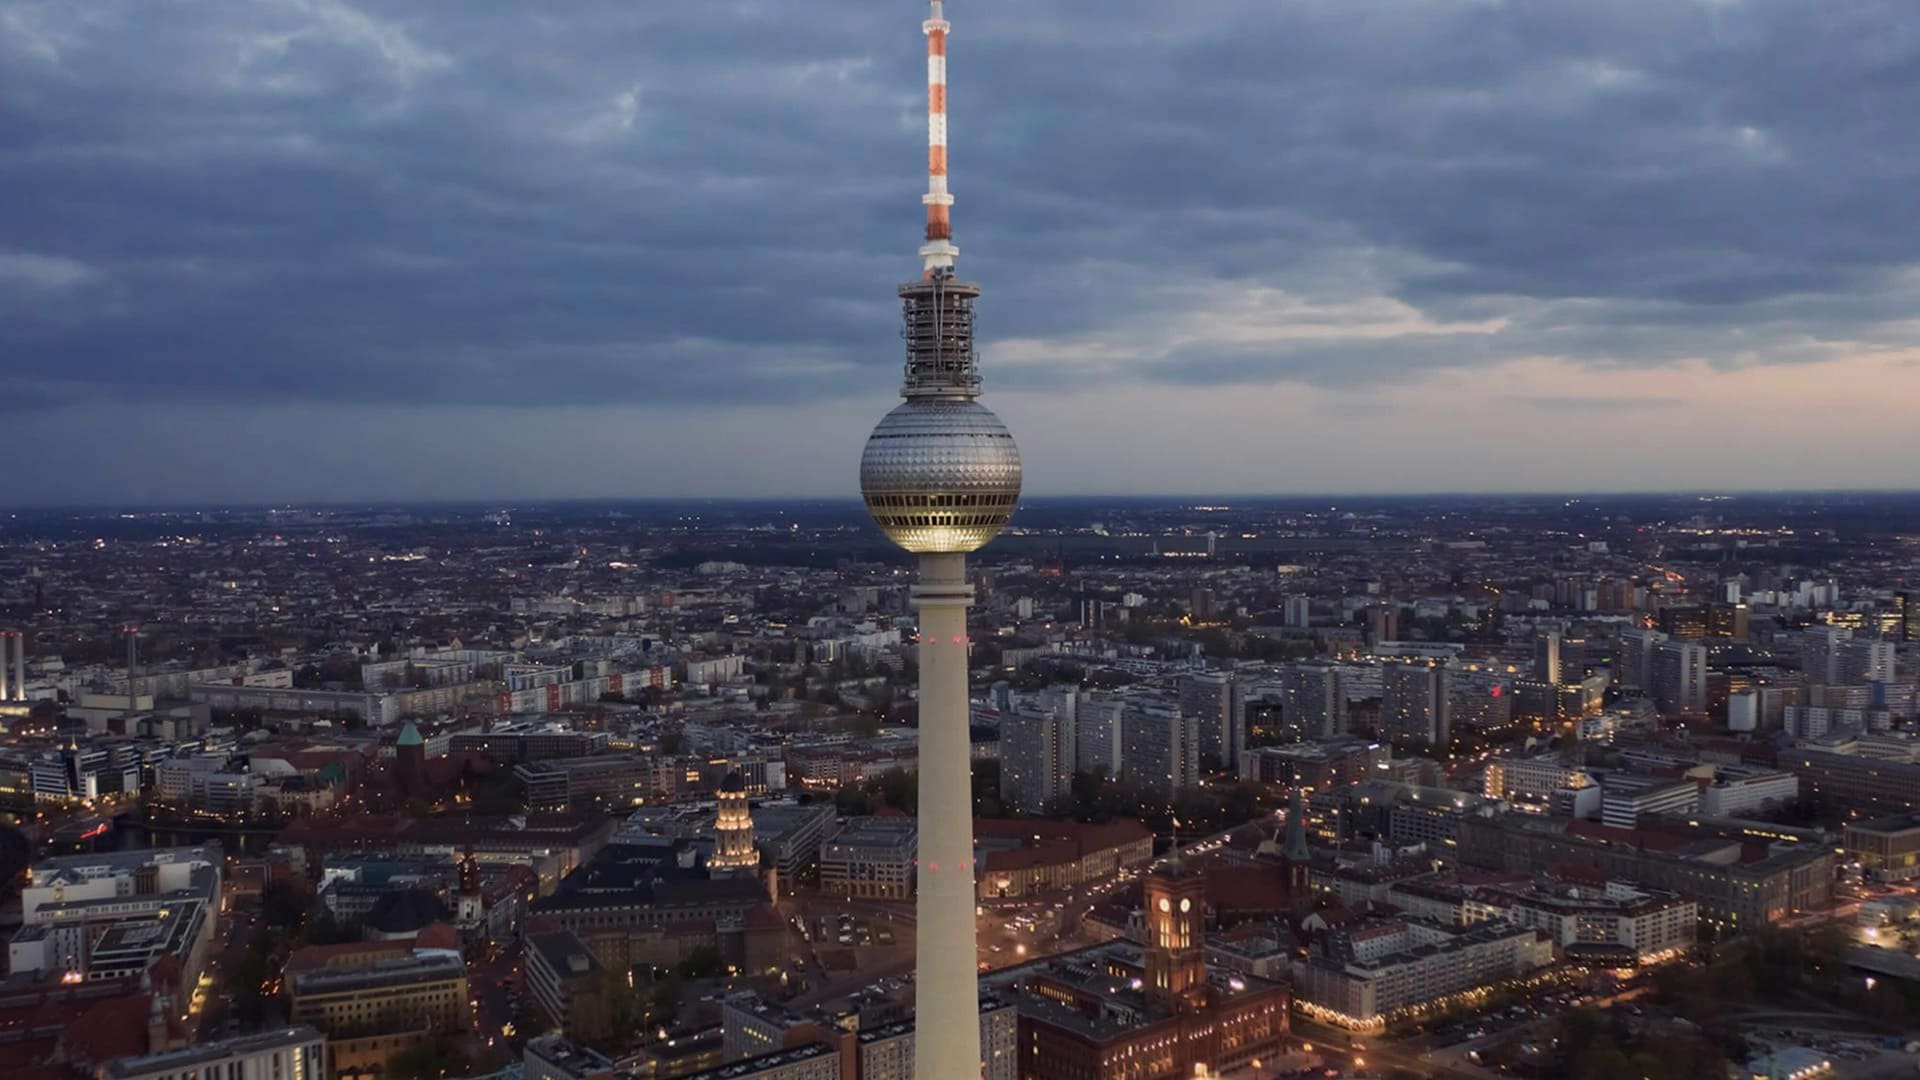 ”ベルリンの排熱回収”のイメージ画像 / Image of ”Waste heat recovery in Berlin”